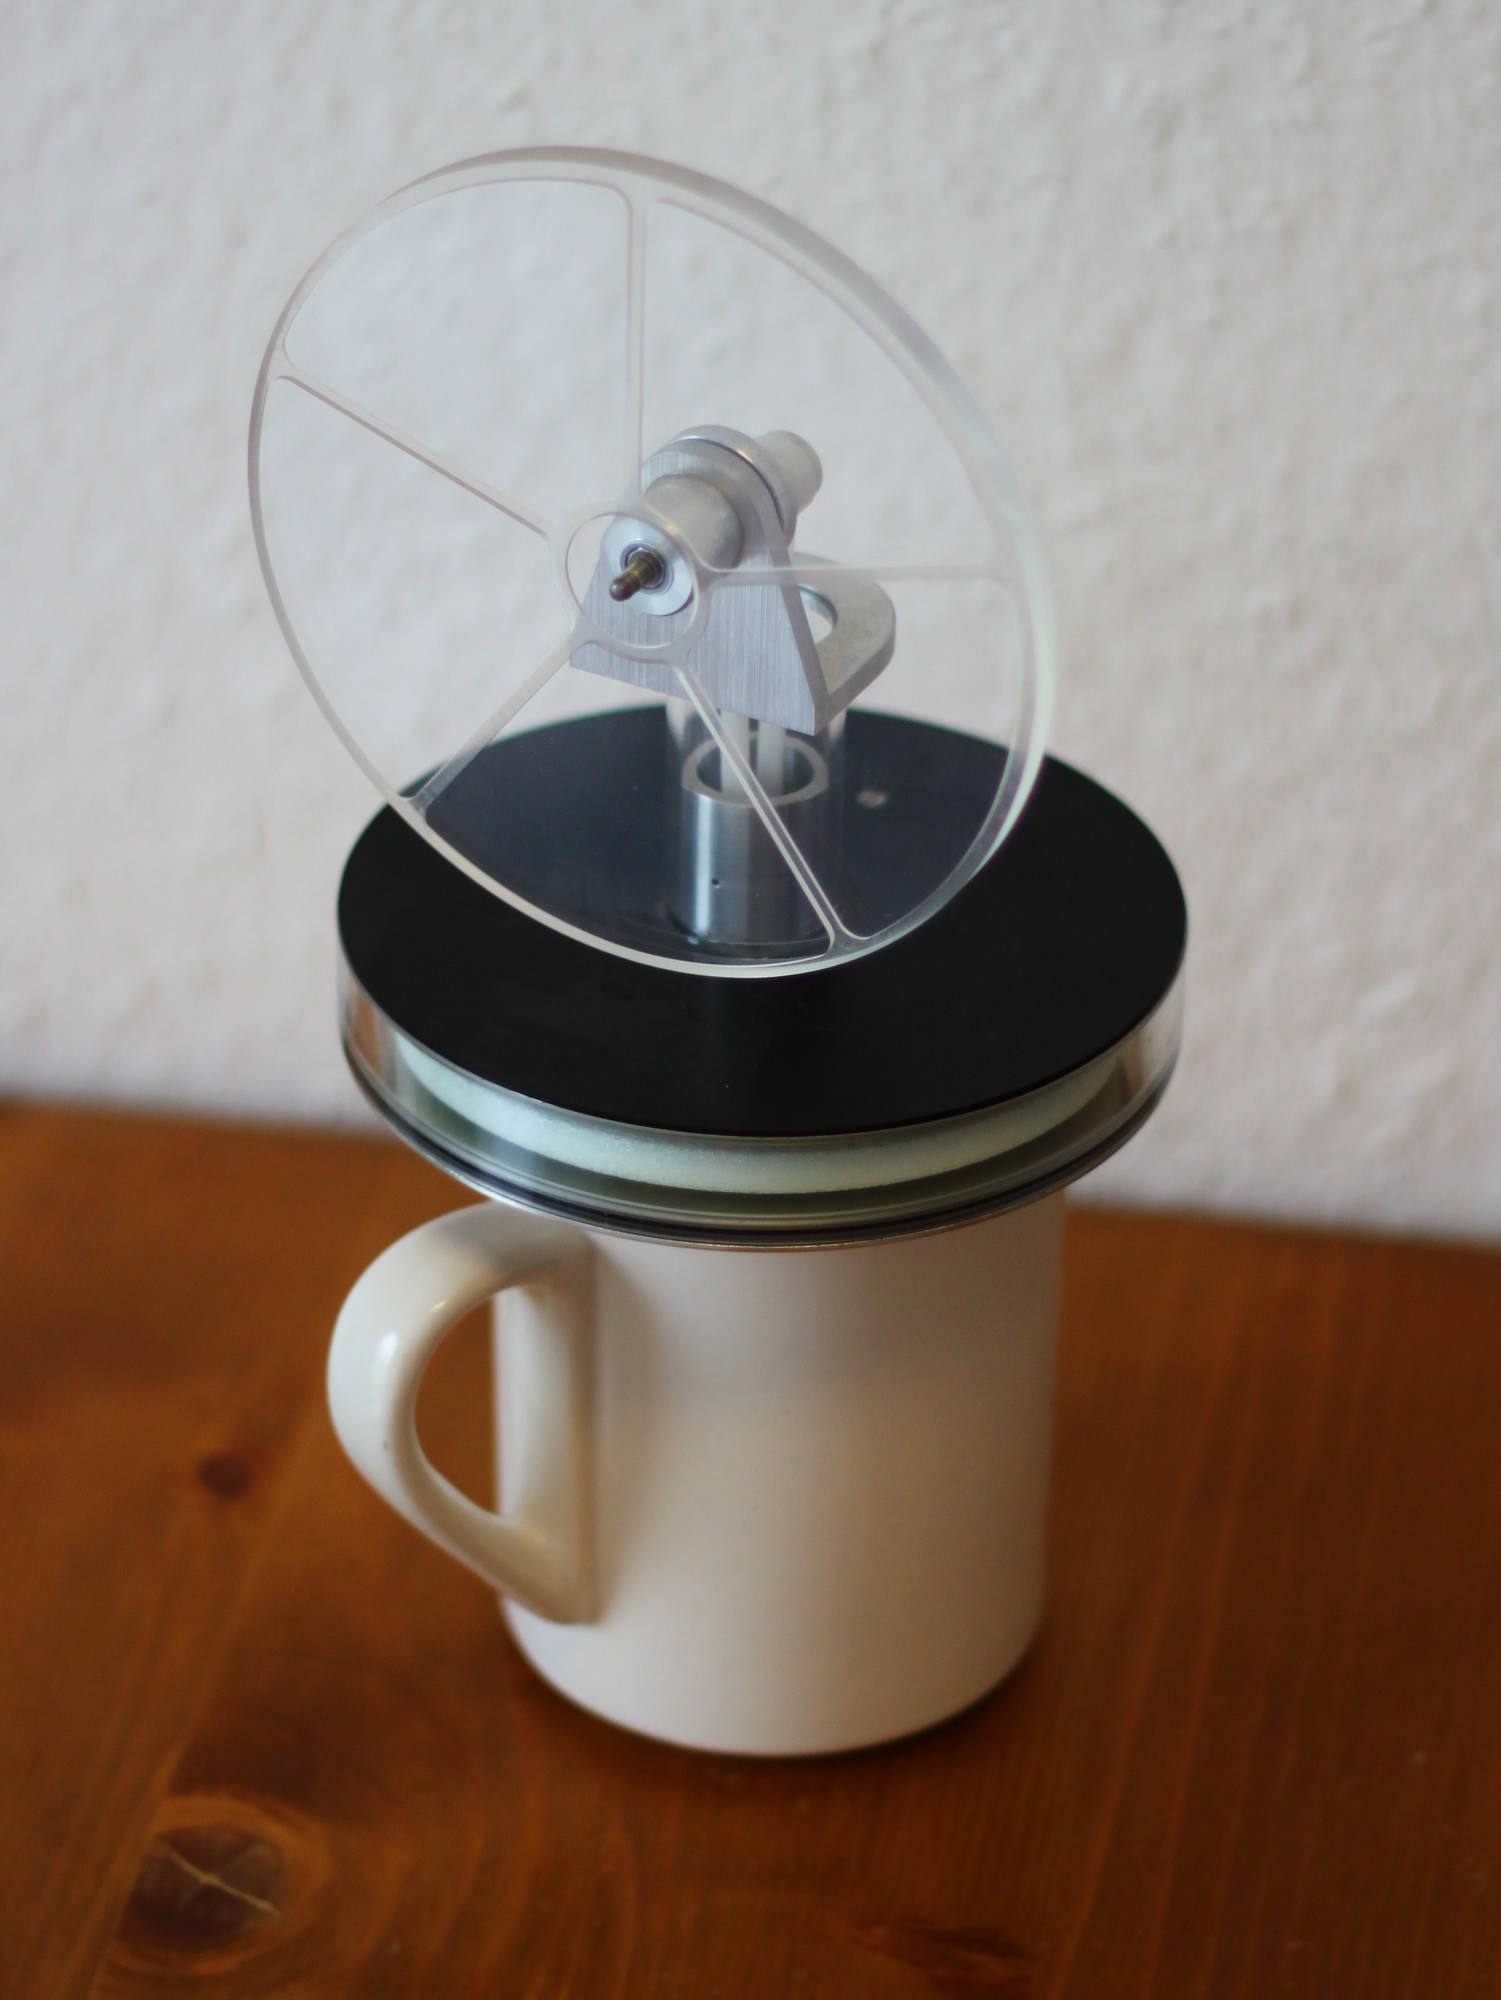 Niedertemperatur Stirlingmotor Selbstbau Läuft beliebig Wärmequelle Toy DIY Kit 